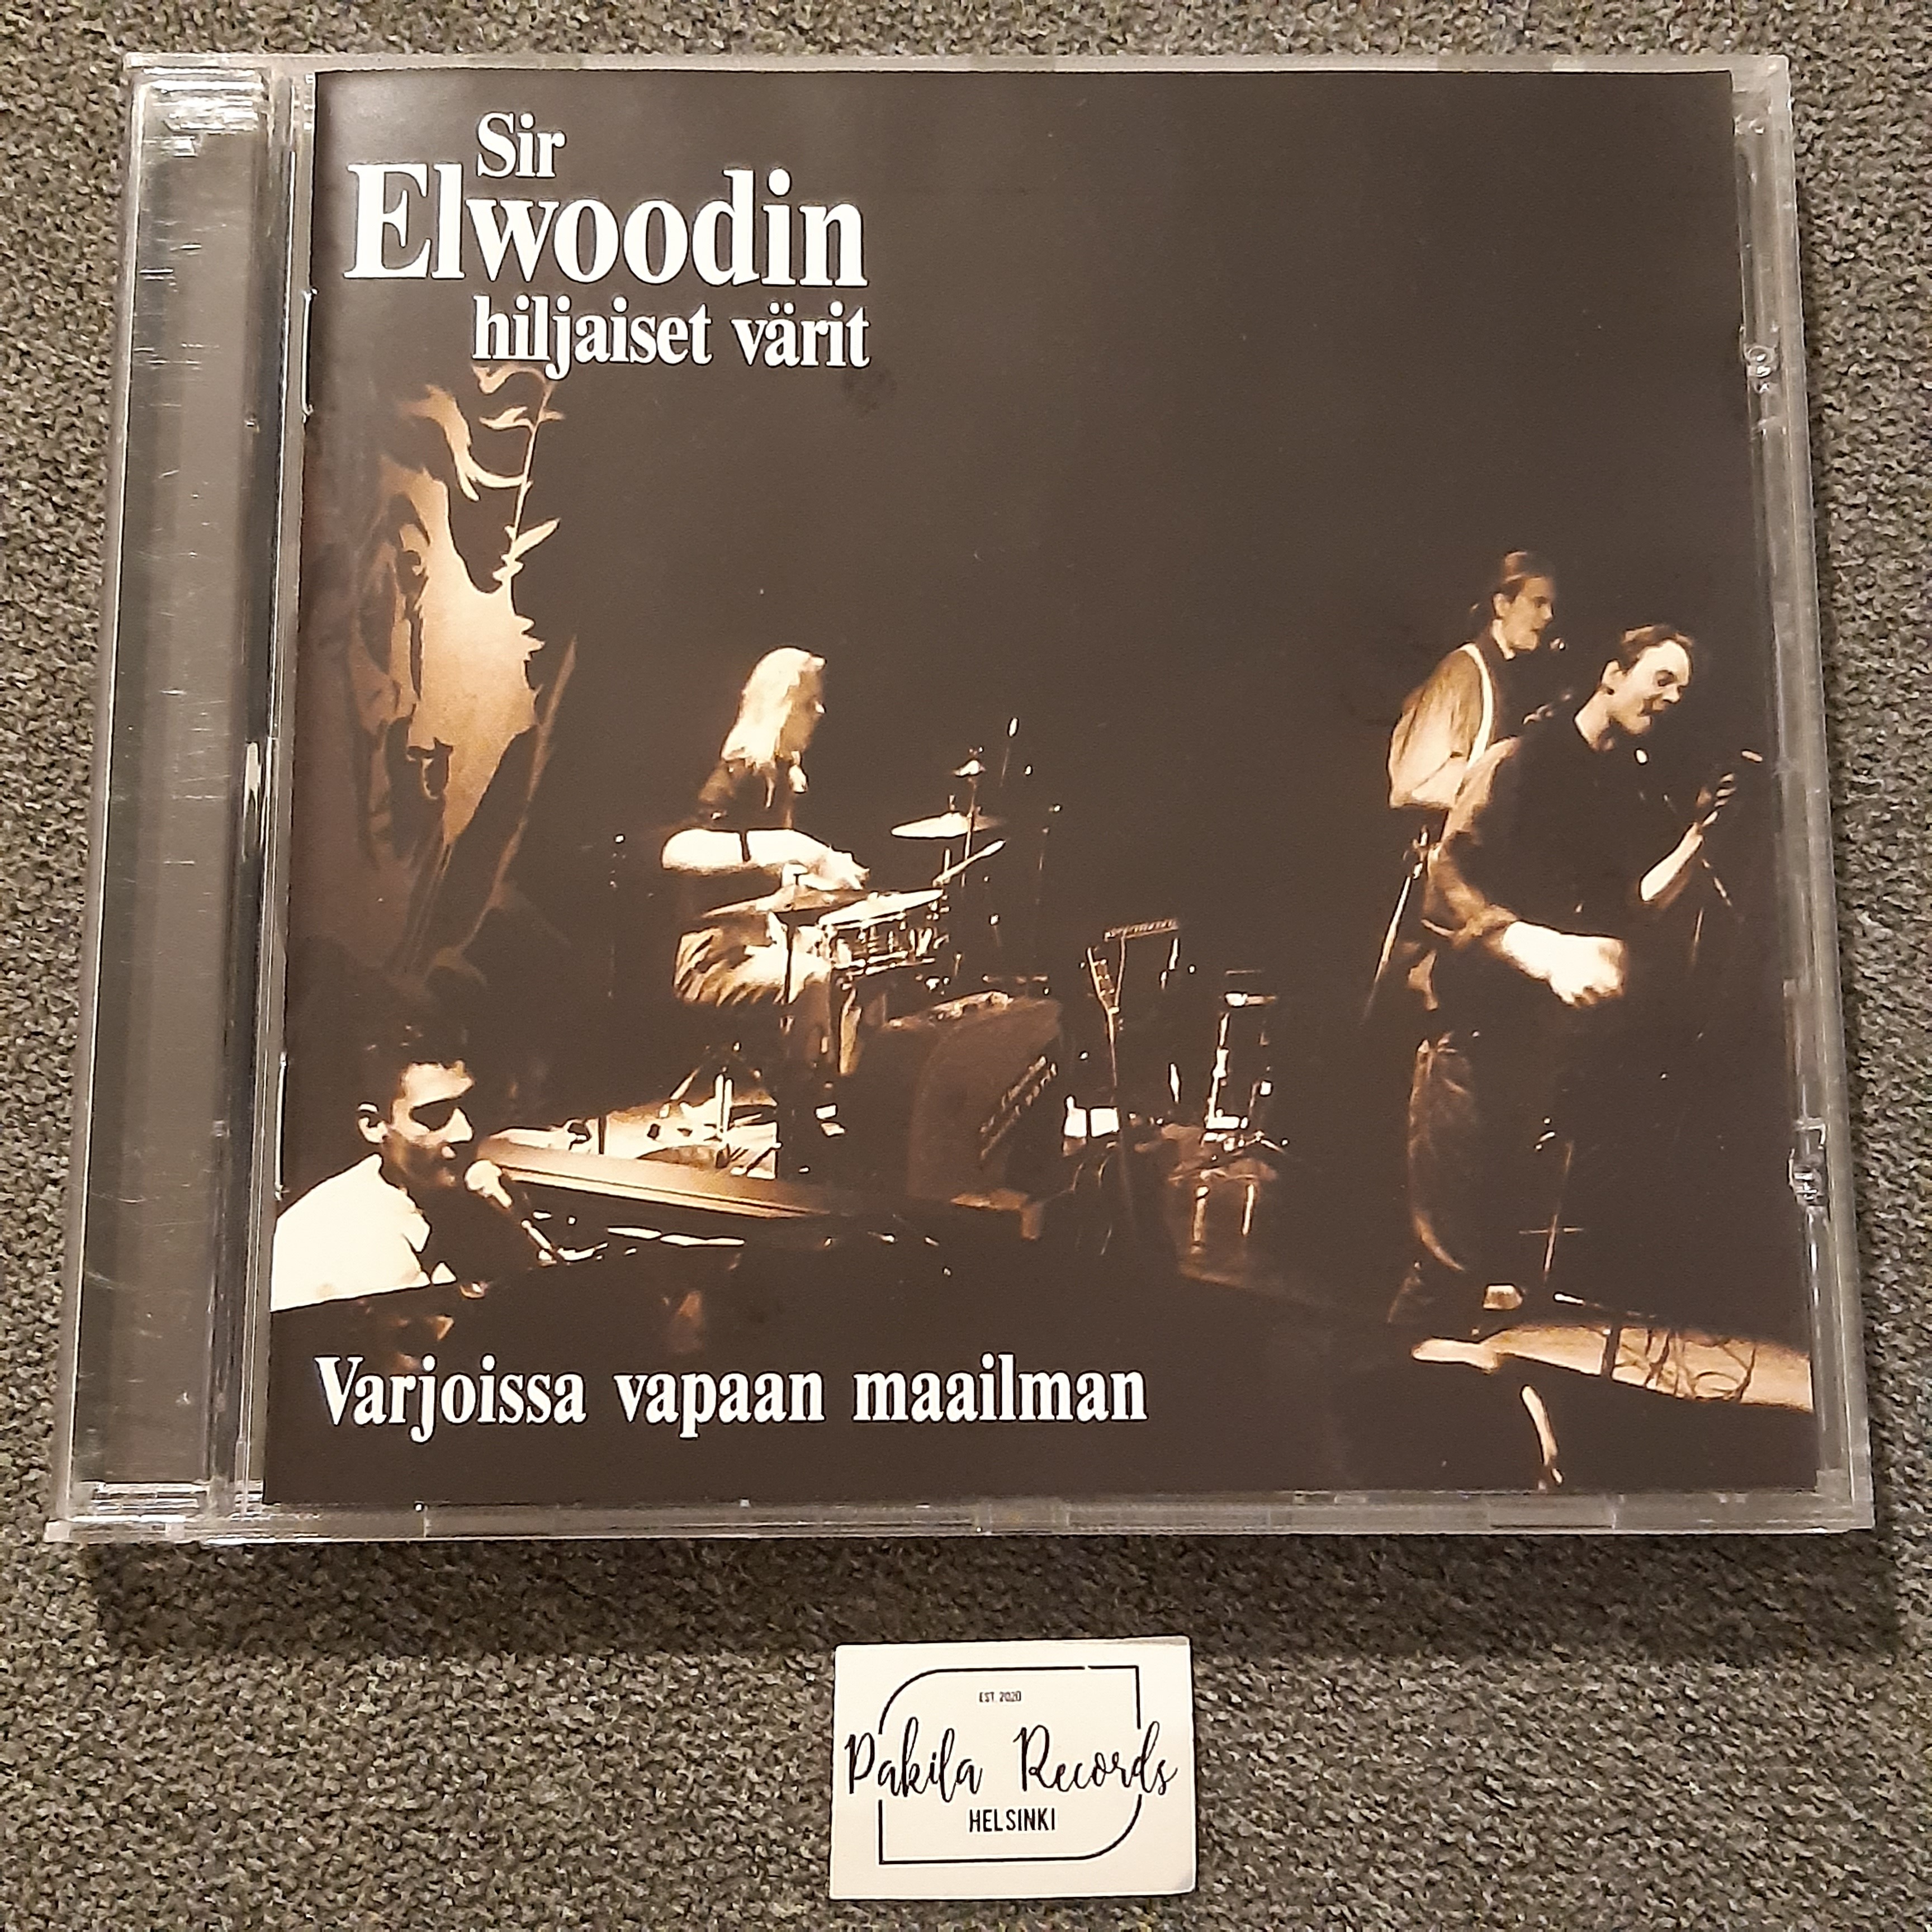 Sir Elwoodin hiljaiset värit - Varjoissa vapaan maan - CD (käytetty)